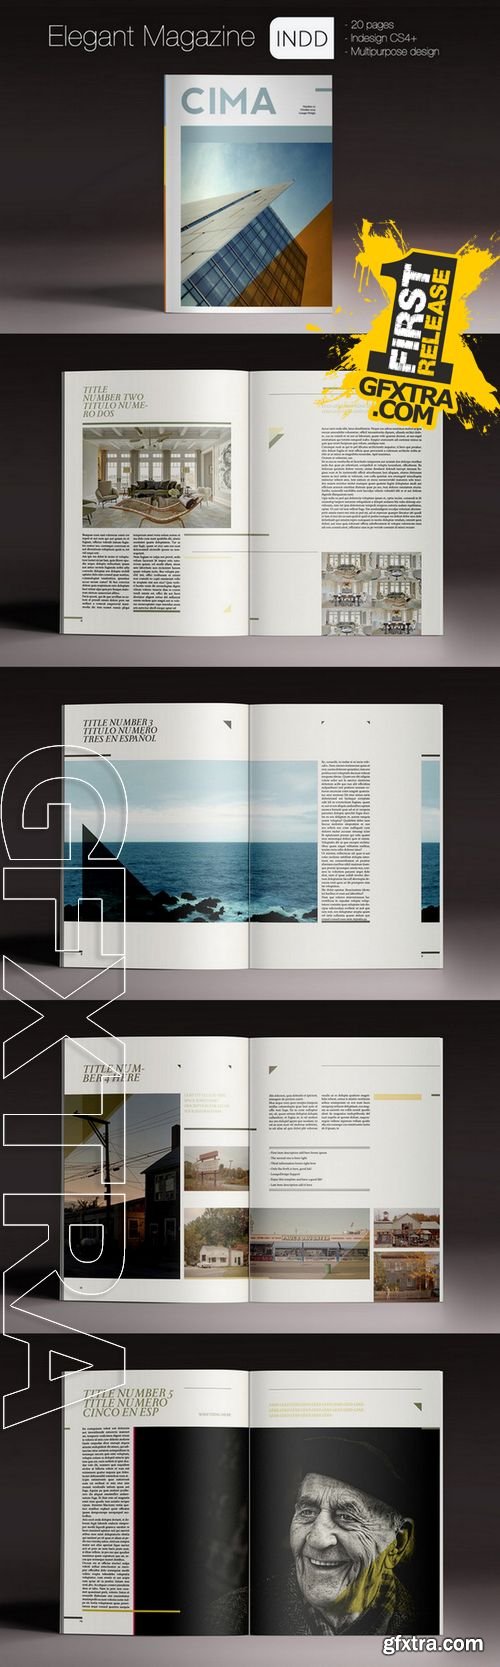 Elegant Magazine - CM 97649